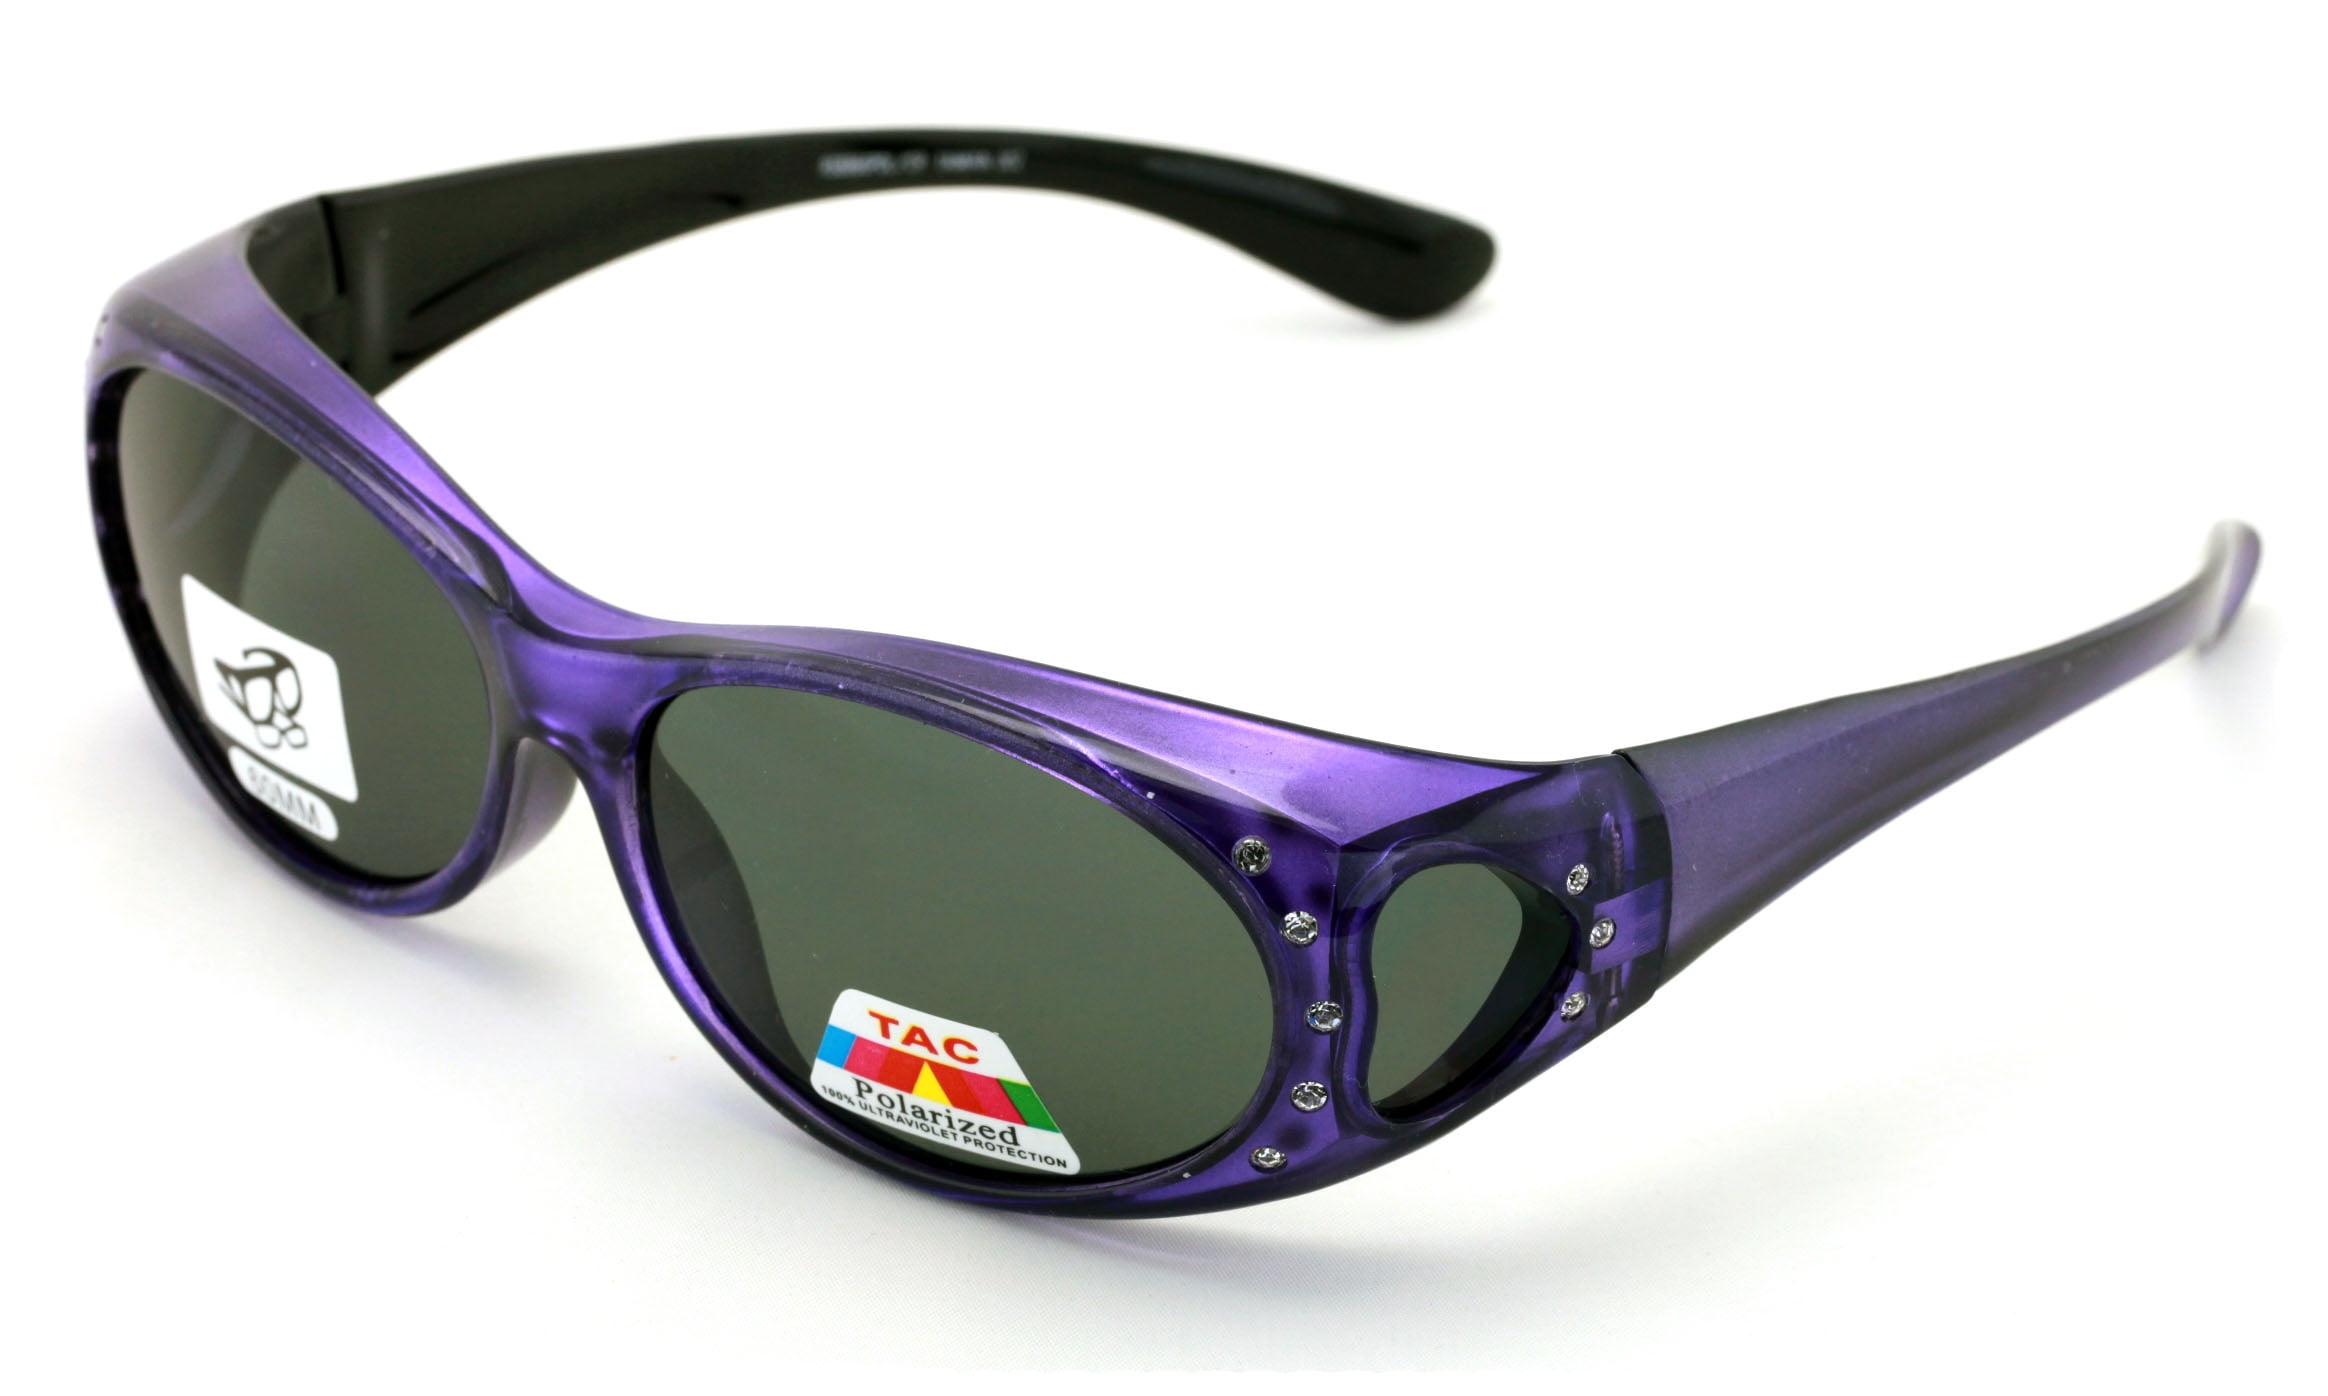 Rhinestone Polarized Sunglasses that Fit Over your Prescription Glasses 